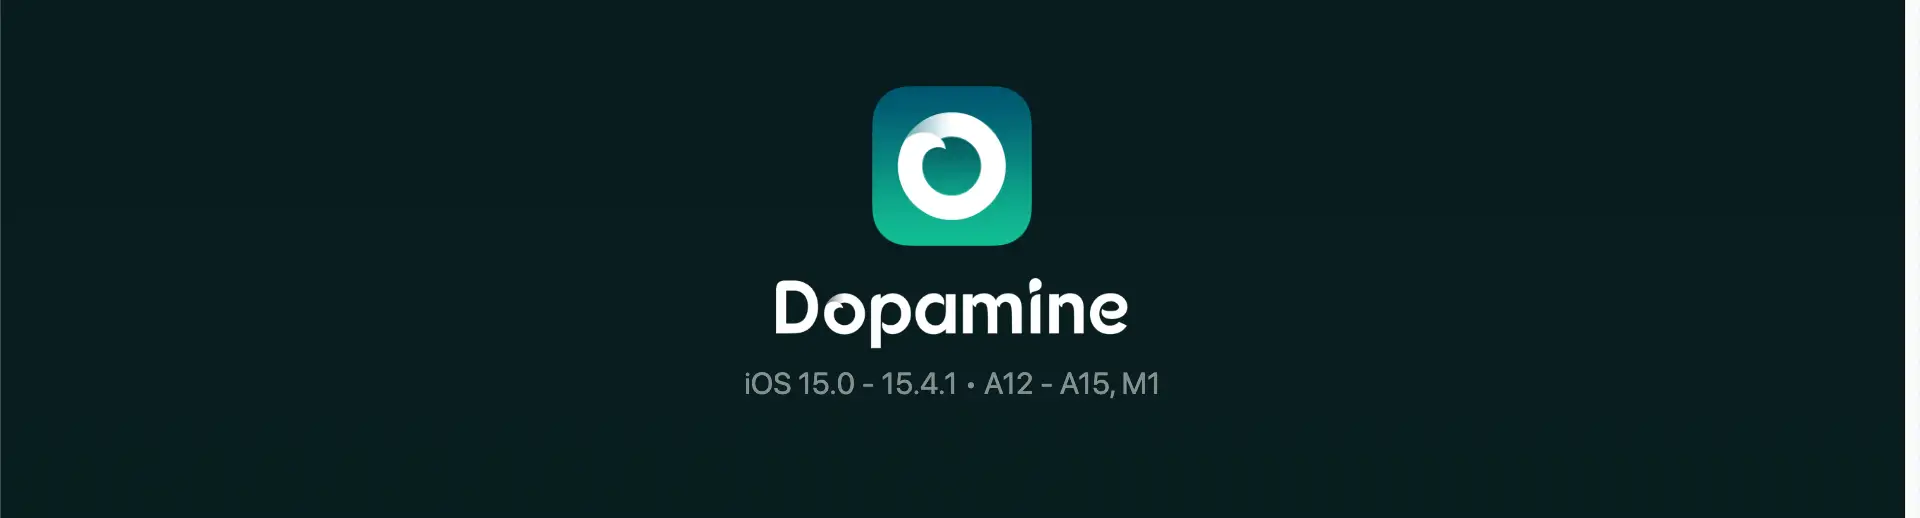 Dopamine Jailbreak random reboots issue is being worked on! iOS 15.0 - 15.4.1 Dopamine Jailbreak News